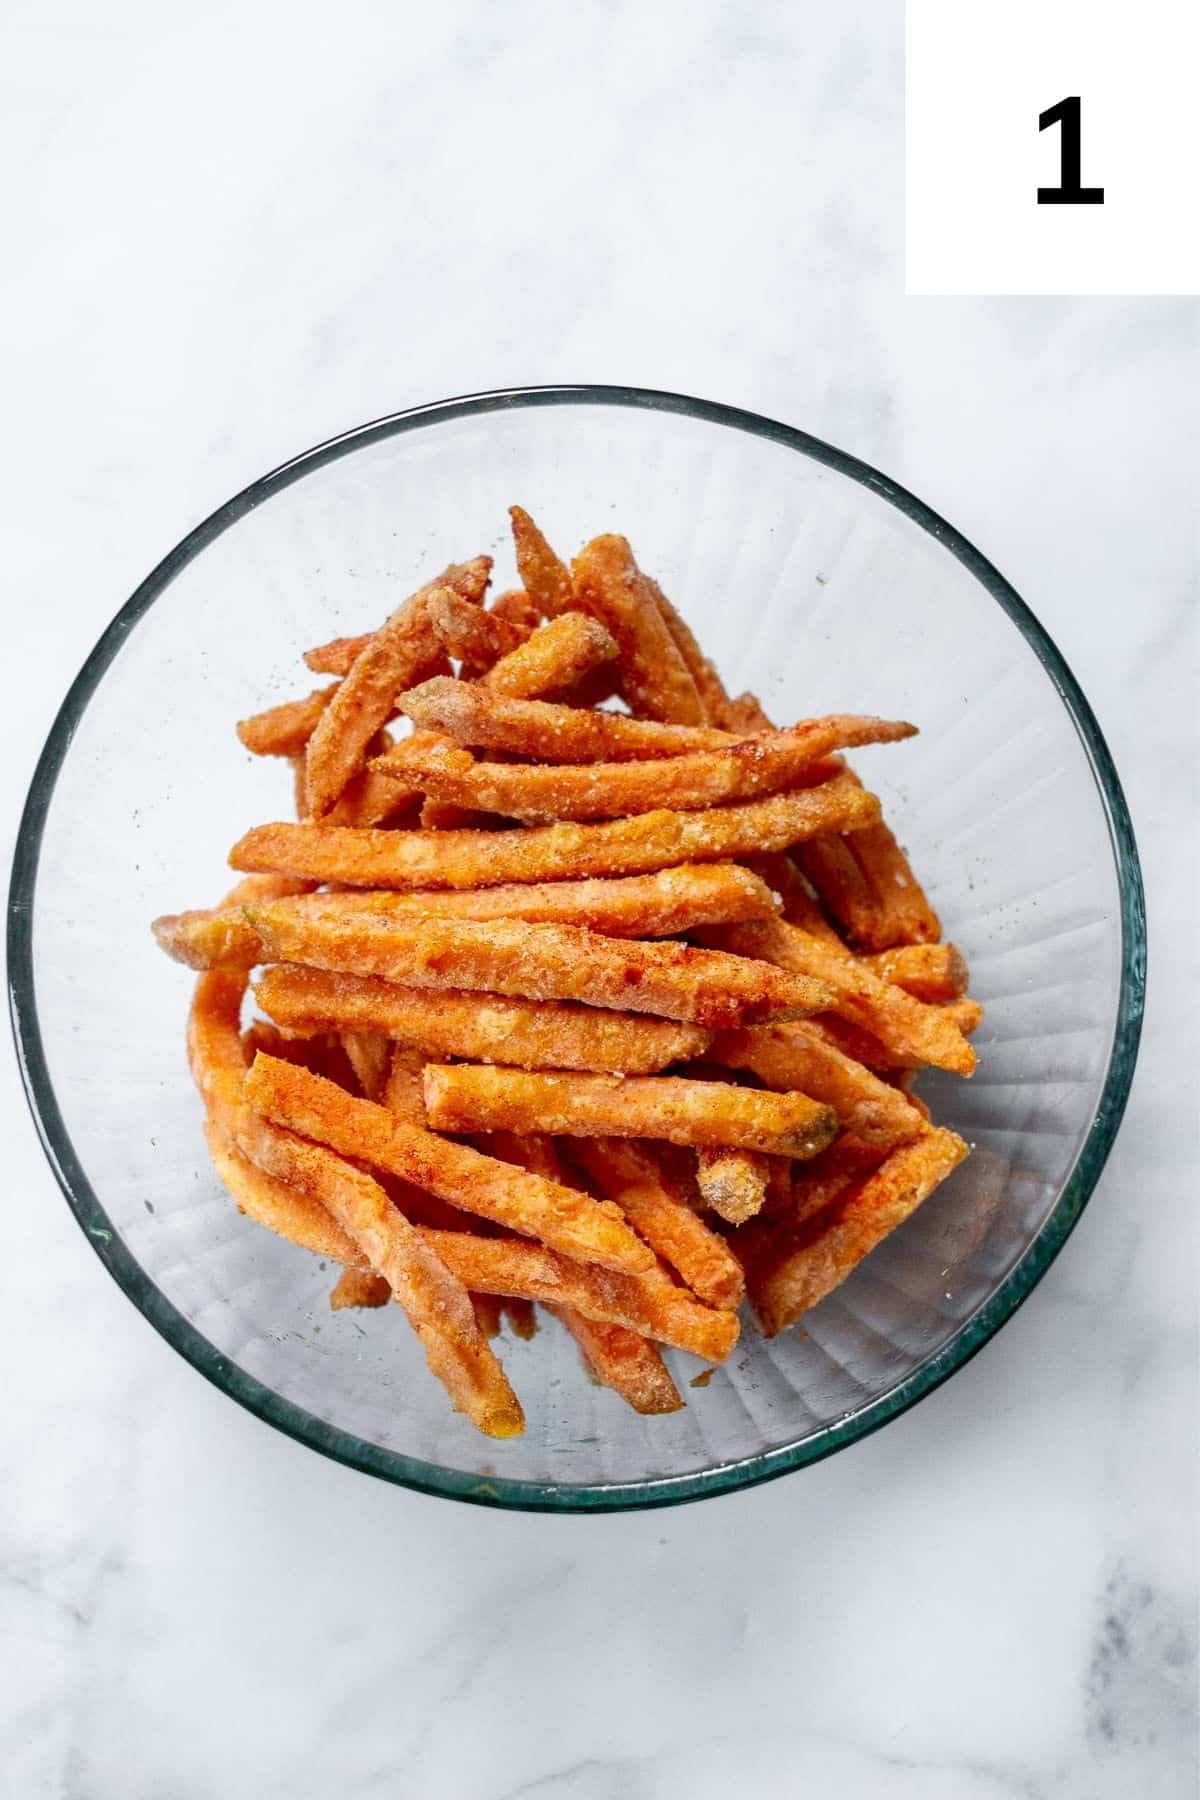 Frozen sweet potato fries in a bowl, seasoned.